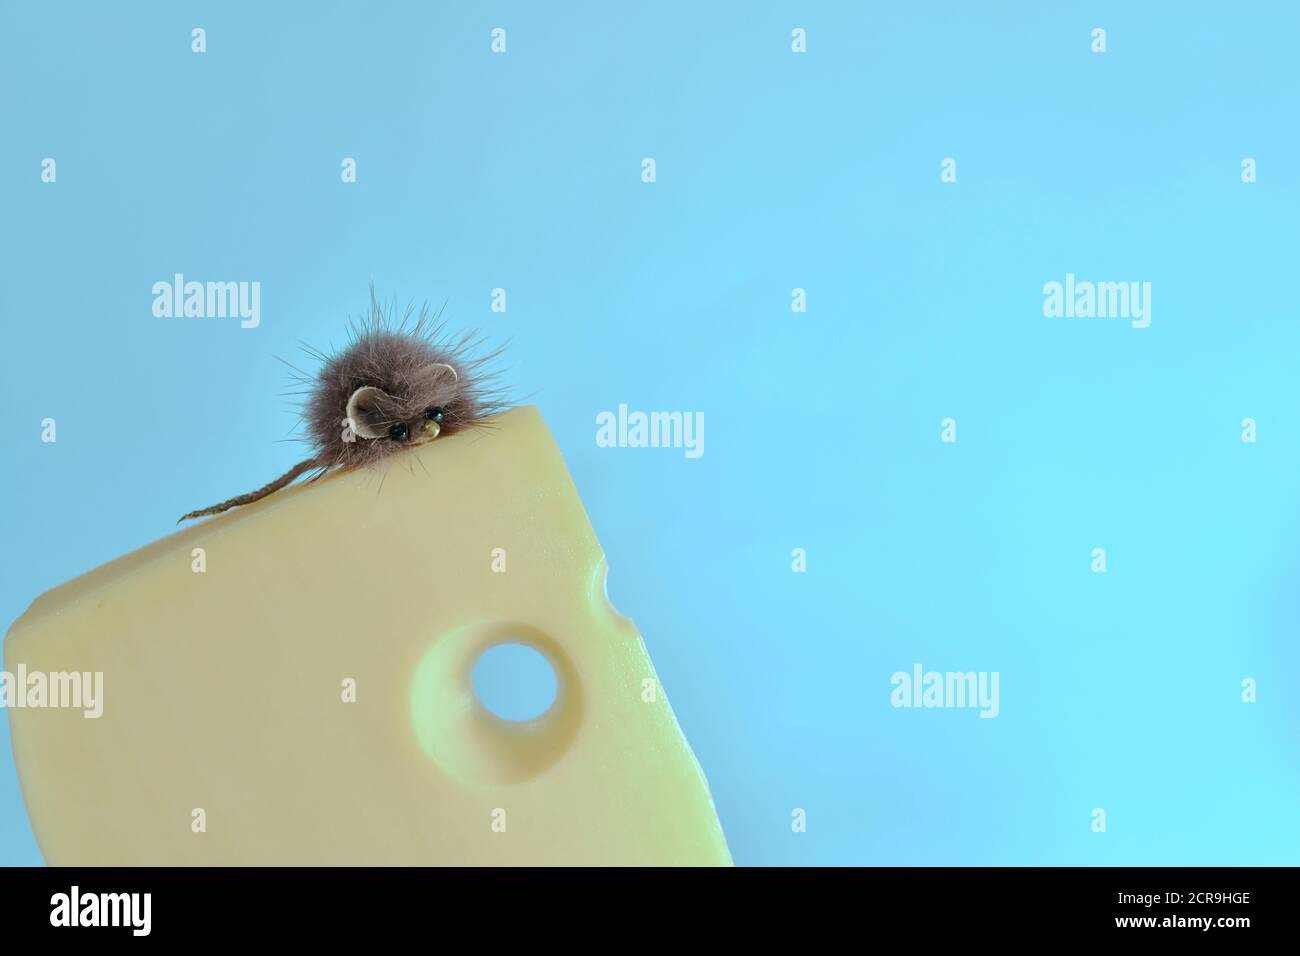 Flauschige Spielzeugmaus kletterte auf ein Stück Käse mit einem Loch, auf einem blauen Hintergrund. Stockfoto